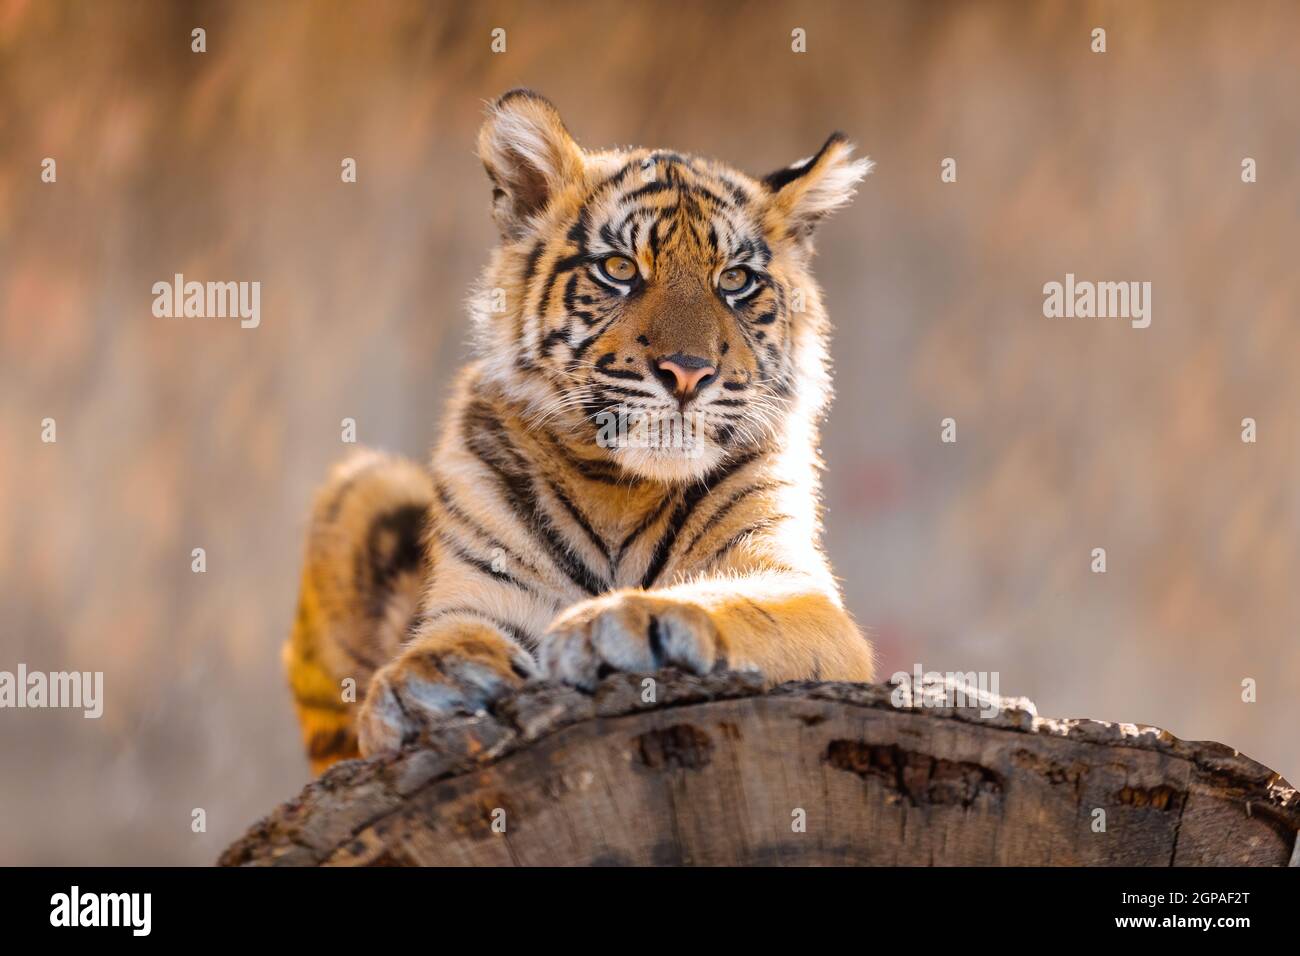 Kätzchen Baby von Sumatratiger Tiger (Panthera tigris sumatrae), seltene Tiger Unterart, die die indonesische Insel Sumatra bewohnt Stockfoto